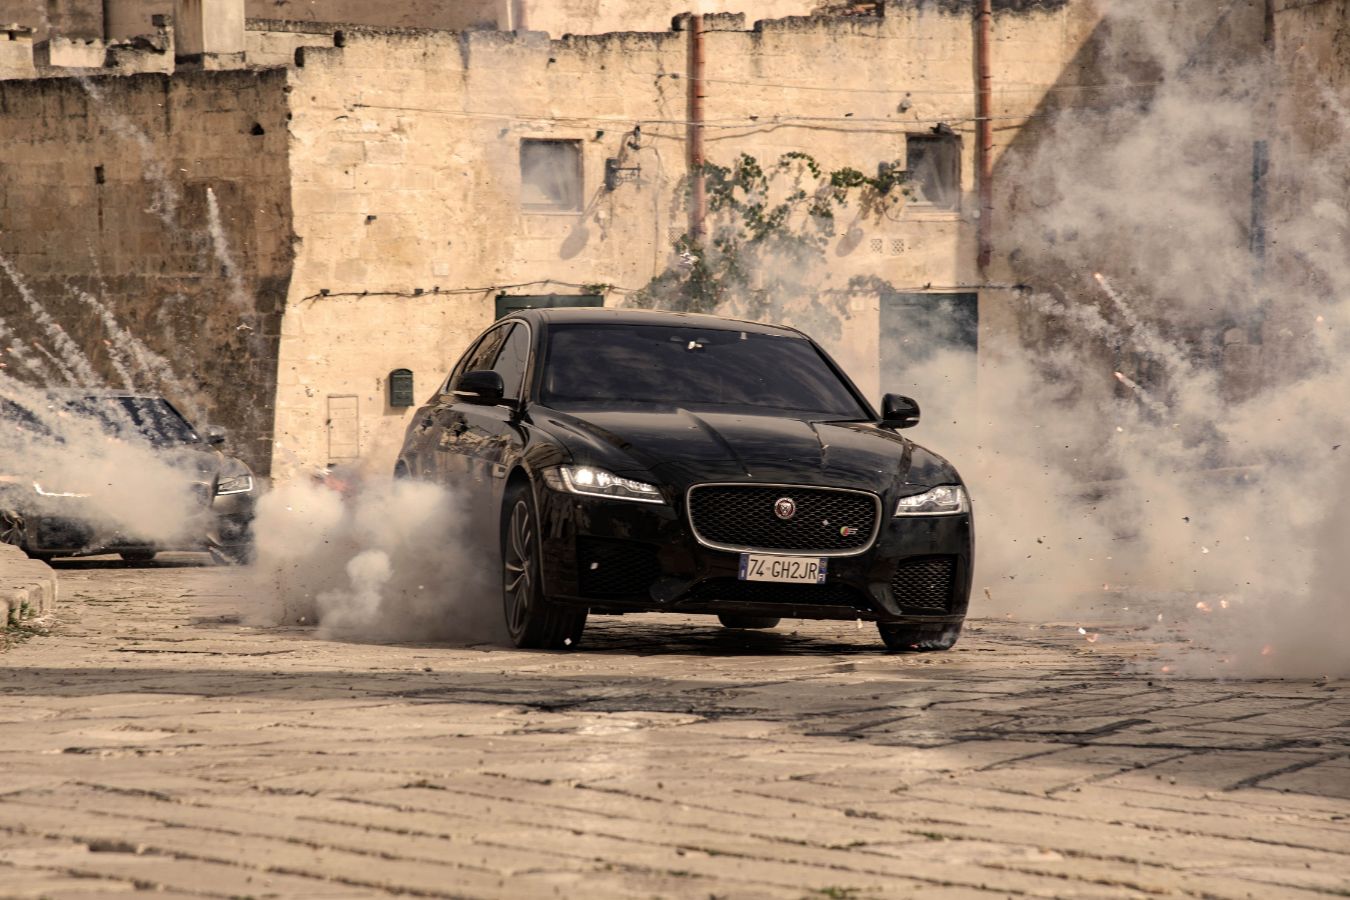 xe hoi 3 Jaguar XF lần đầu kết hợp ngoạn mục với Điệp viên 007 Trong Bộ Phim No Time To Die